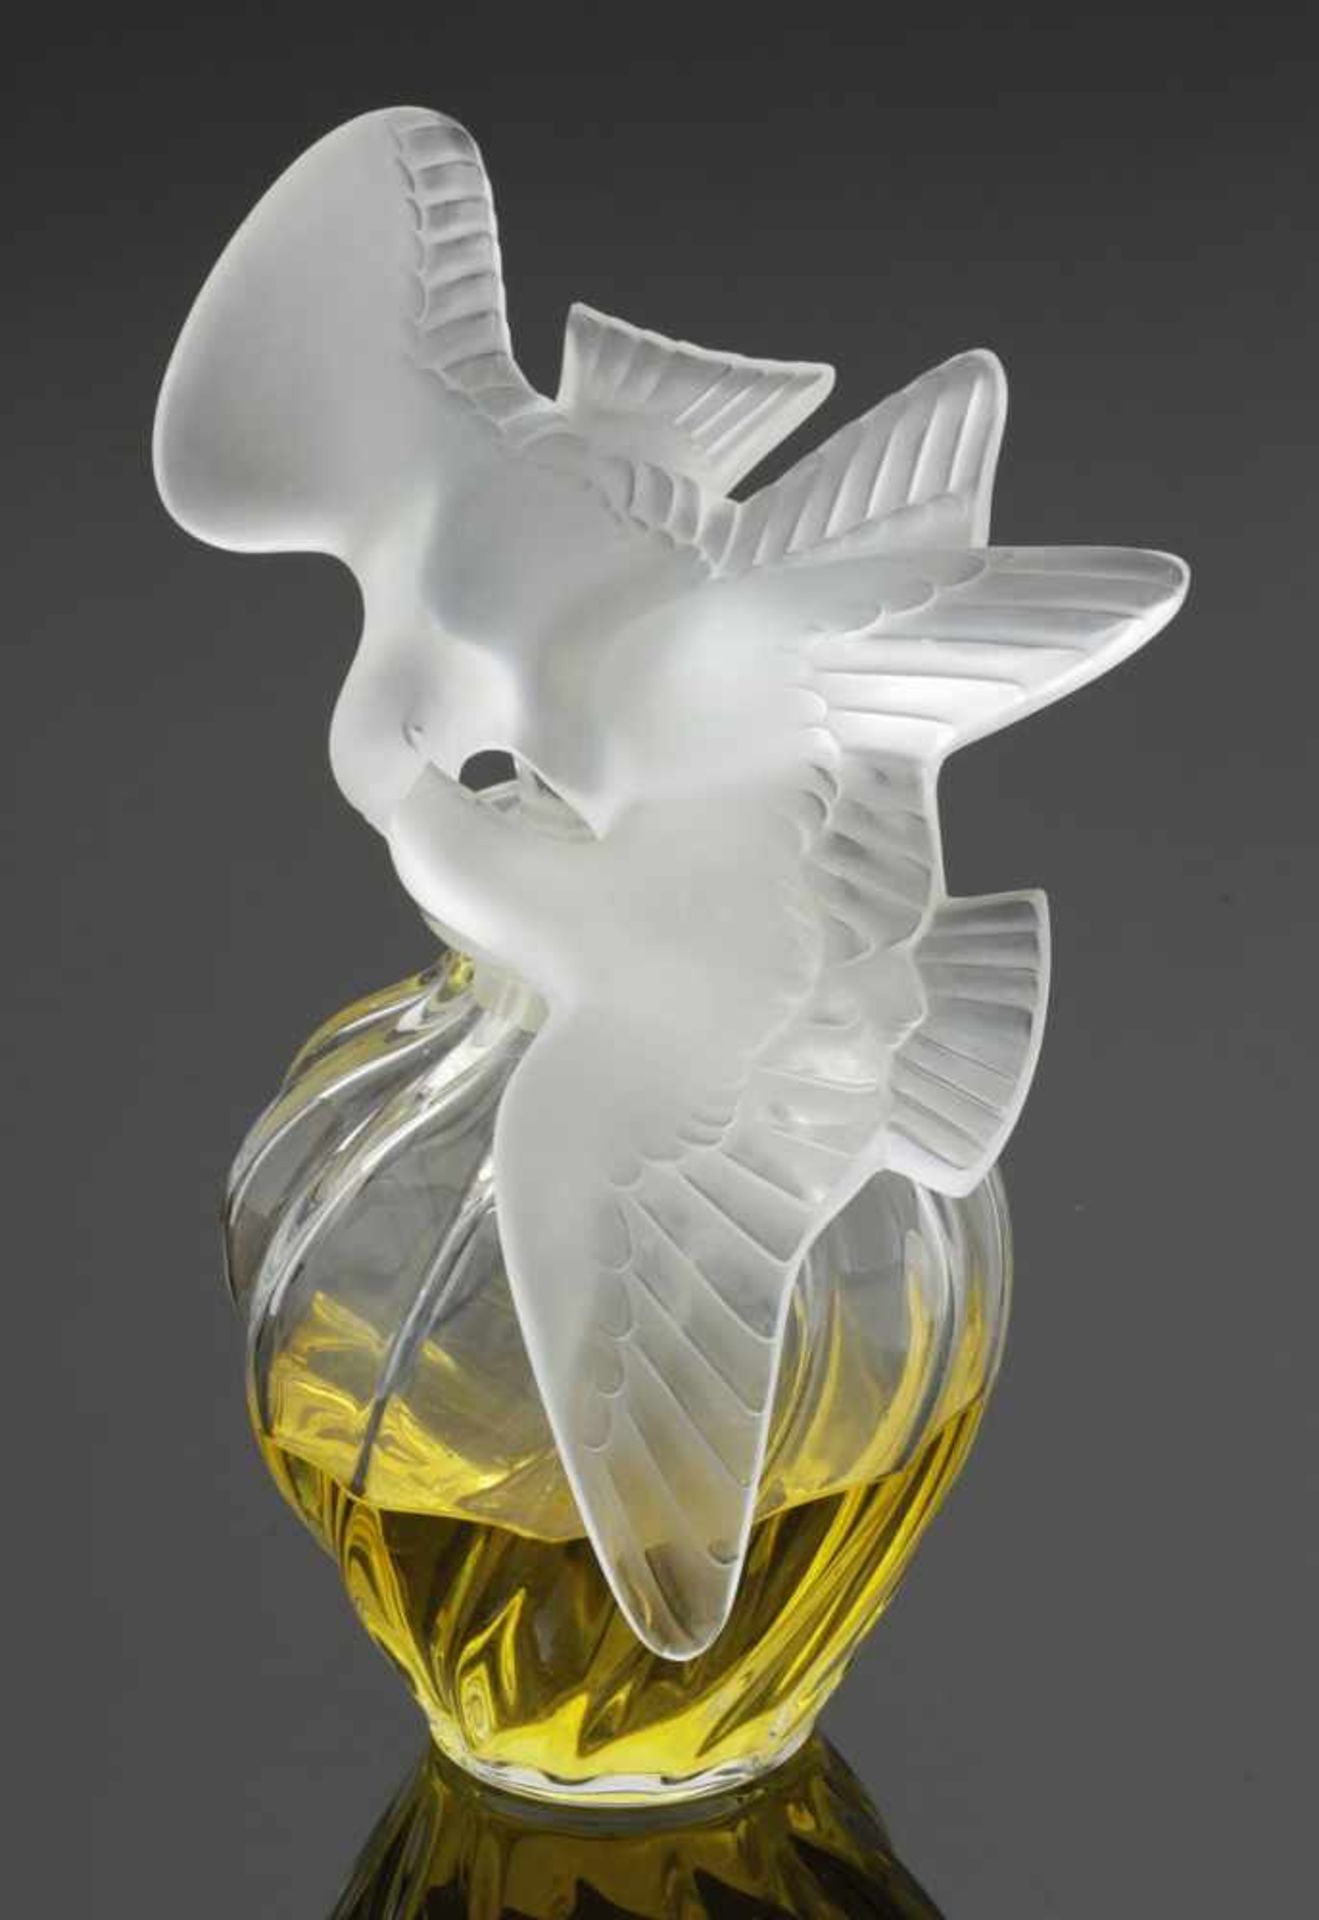 Große Flakon mit Taubenpaar - L air du Temps von Nina Ricci Lalique, Wingen-sur-Moder. Farbloses